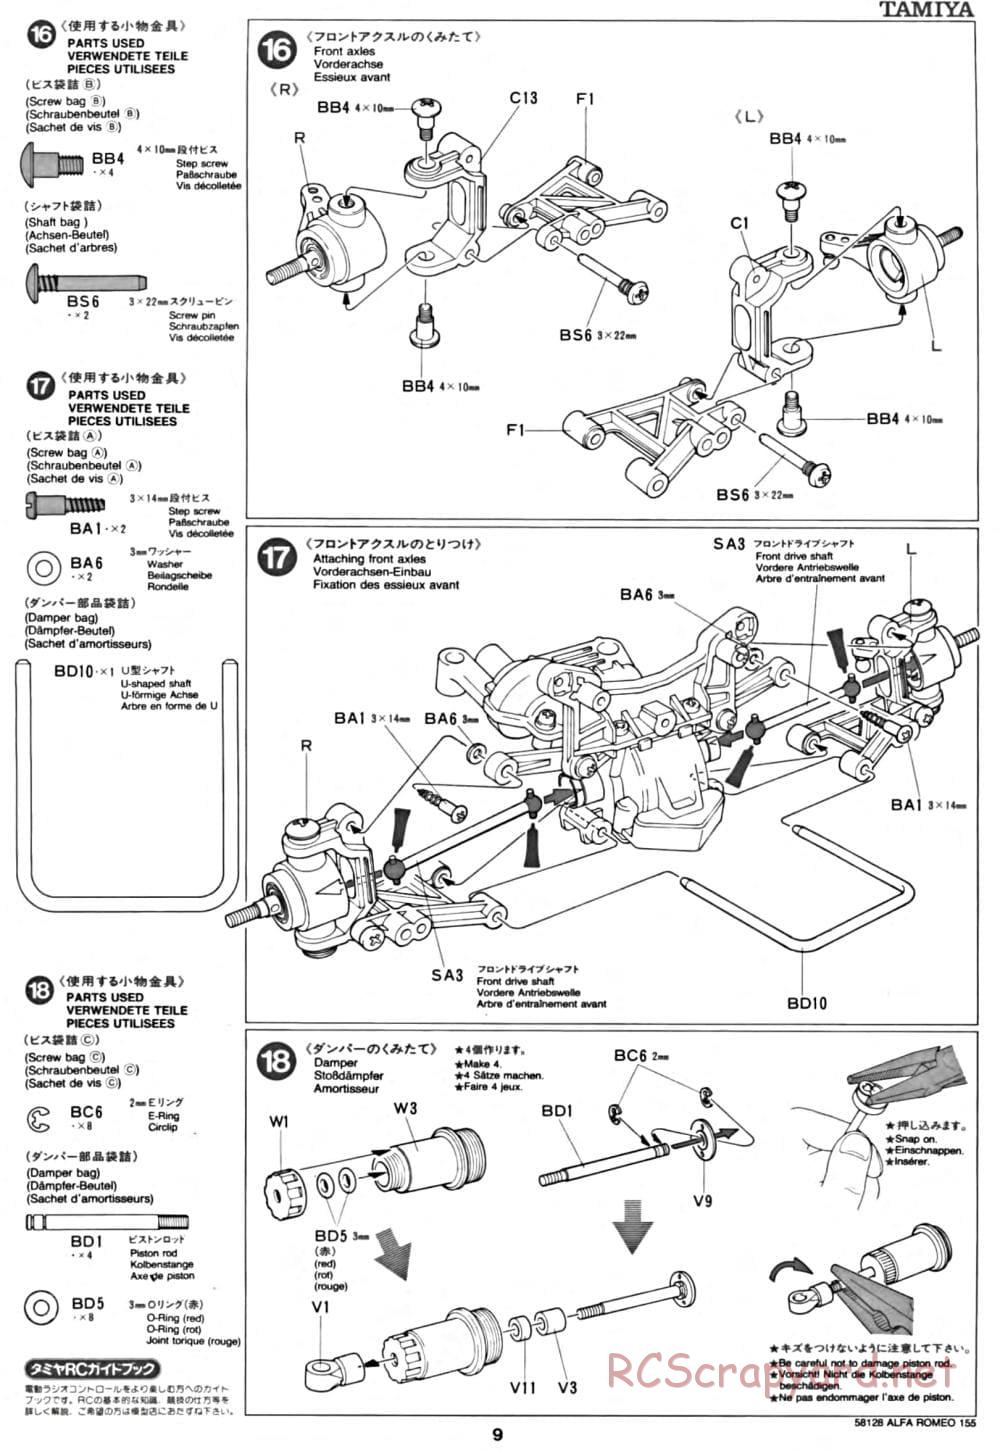 Tamiya - Alfa Romeo 155 V6 TI - TA-02 Chassis - Manual - Page 9